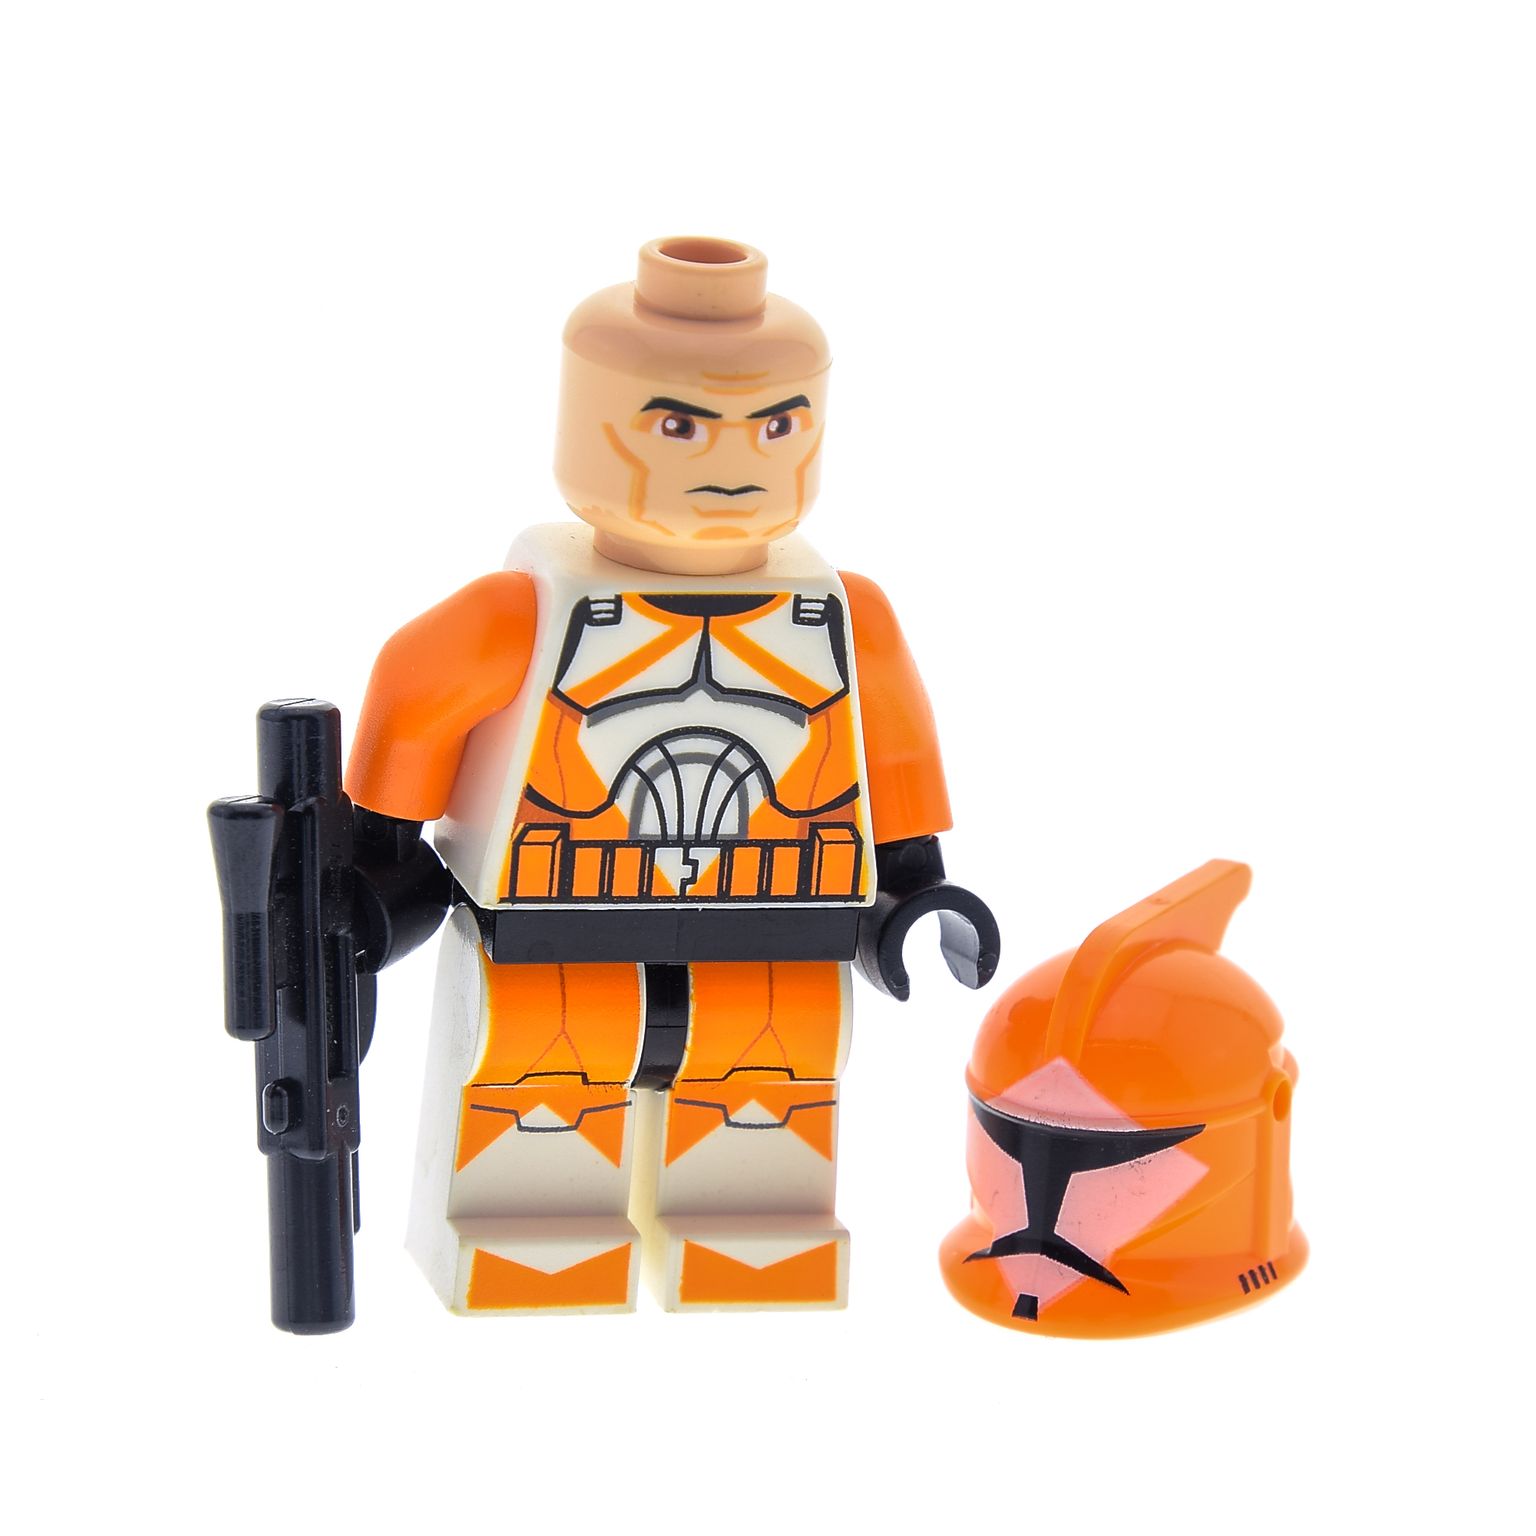 Lego Star Wars Figur Bomb Scout Trooper 7913  x2 Stück 